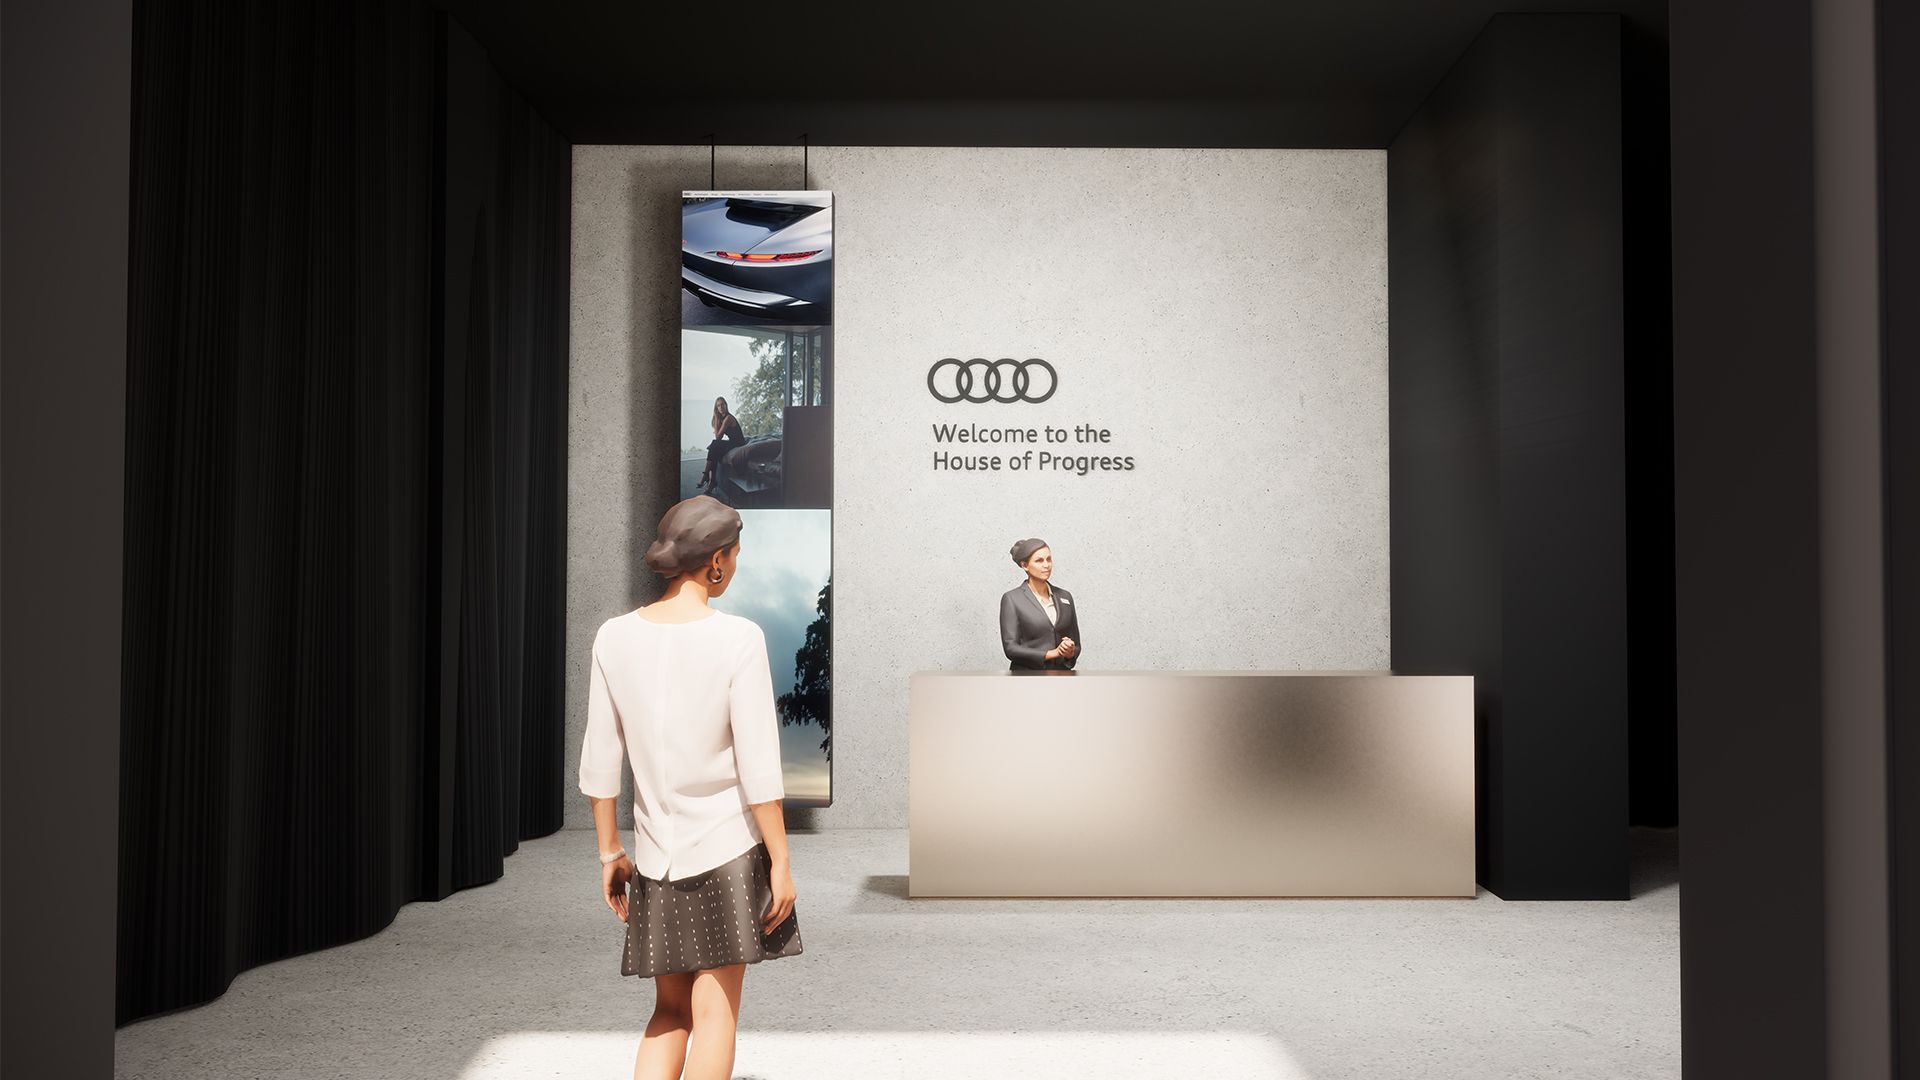 “Yenilenme: ilerlemenin geleceği” vizyonu Audi House of Progress’de hayat bulacak. Ziyaretçiler, çeşitli sergiler ve paneller aracılığıyla üç ana konu hakkında bilgi edinebilirler.